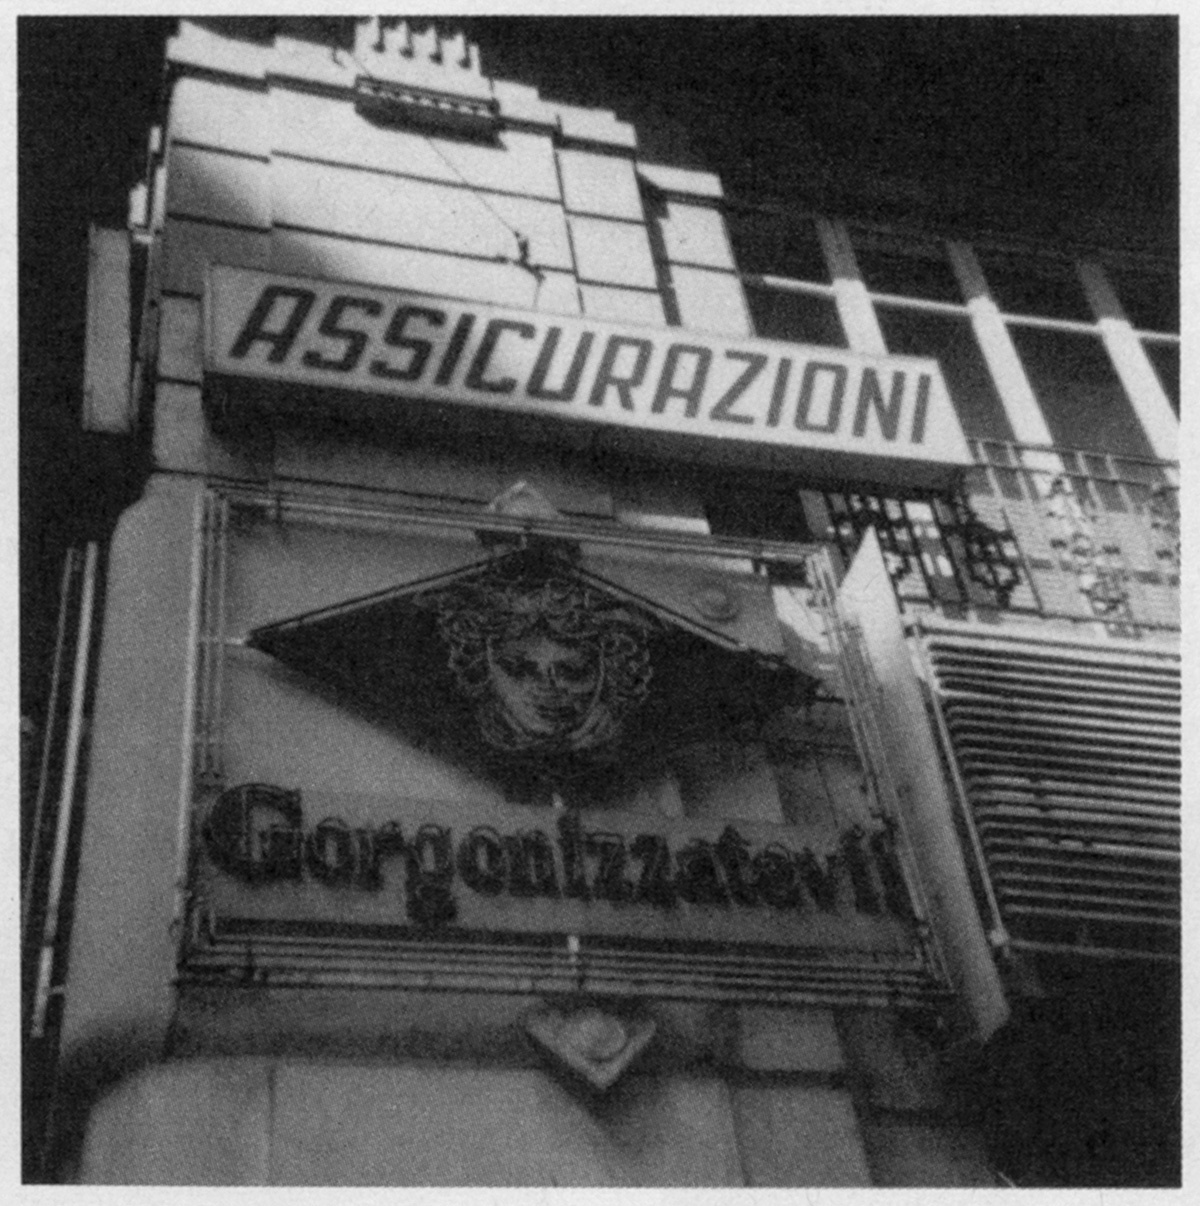 Gorgonisiert euch! - durch Versicherungsabschluß, Bild: Neapel 1970, pensée trouvée. © Melusine Huss.